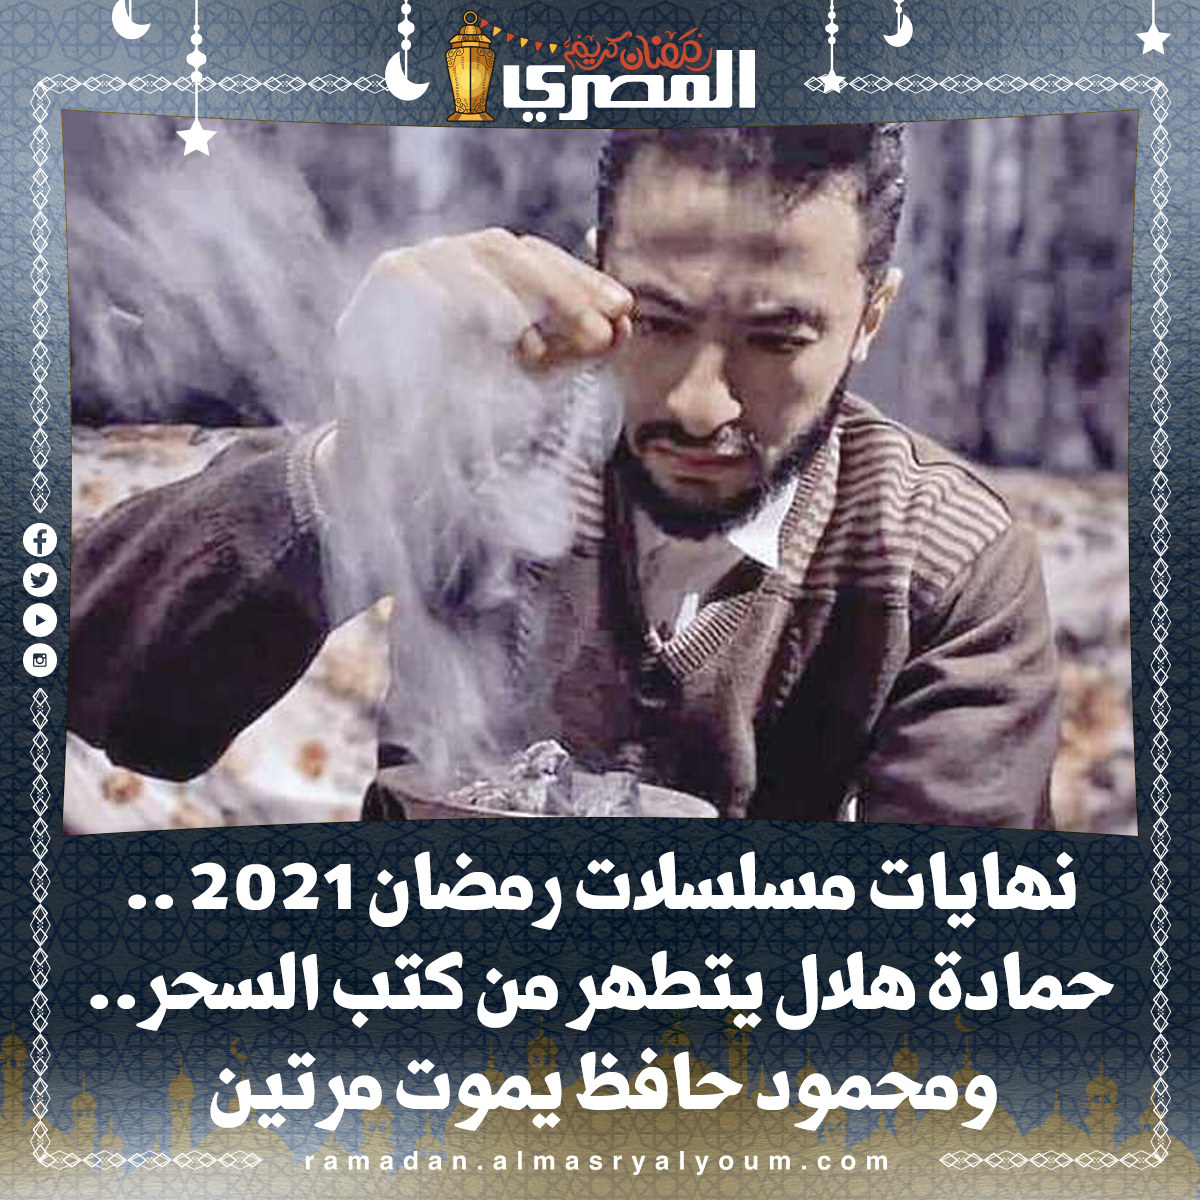 نهايات مسلسلات رمضان 2021 .. حمادة هلال يتطهر من كتب السحر.. ومحمود حافظ يموت مرتين